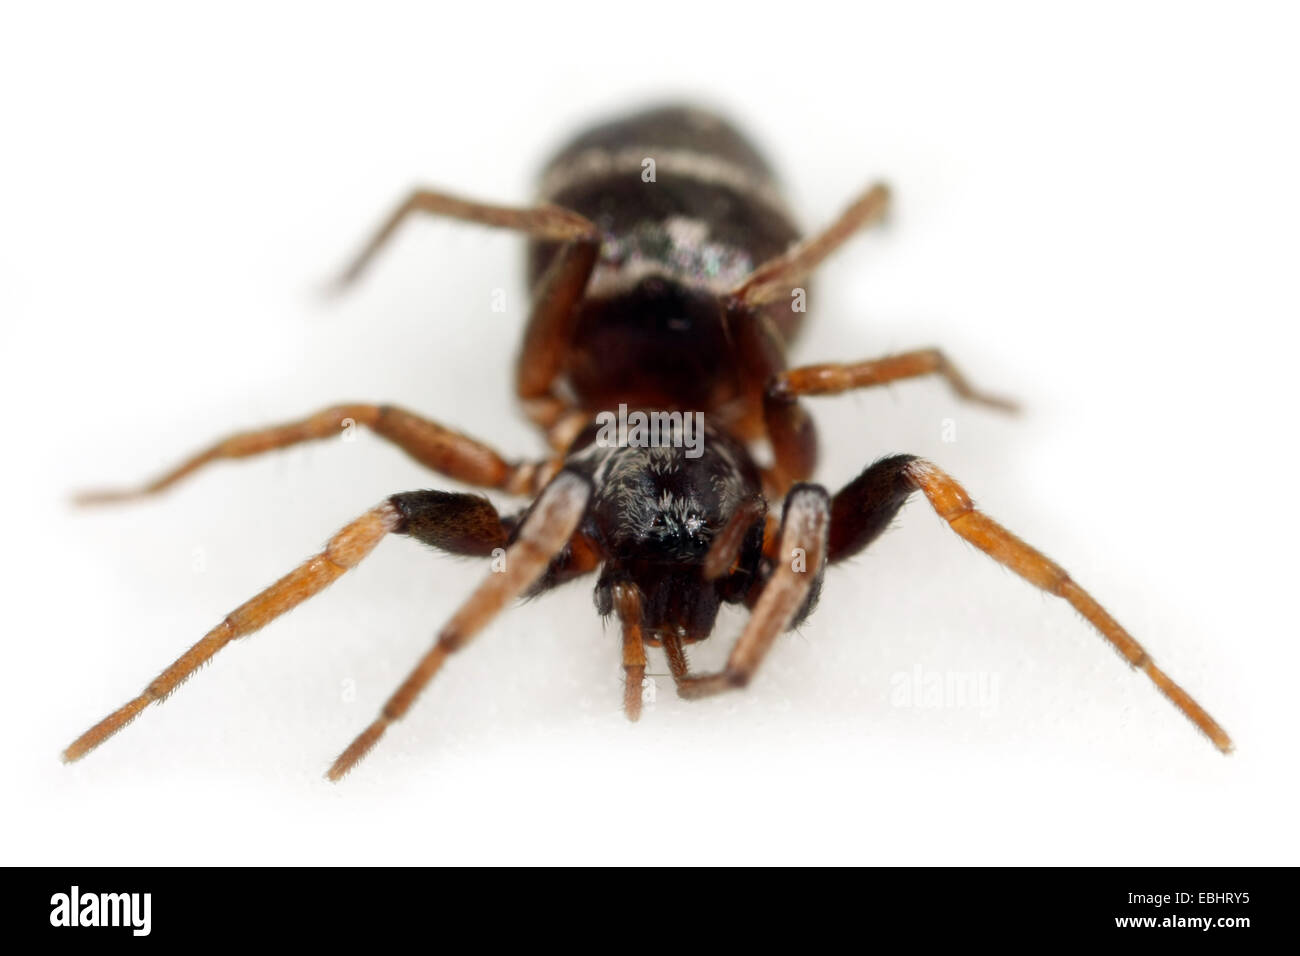 Eine weibliche Boden Spider (Micaria Pulicaria), frontalen Blick auf weißem Hintergrund. Boden-Spinnen sind Teil der Familie Gnaphosidae. Stockfoto